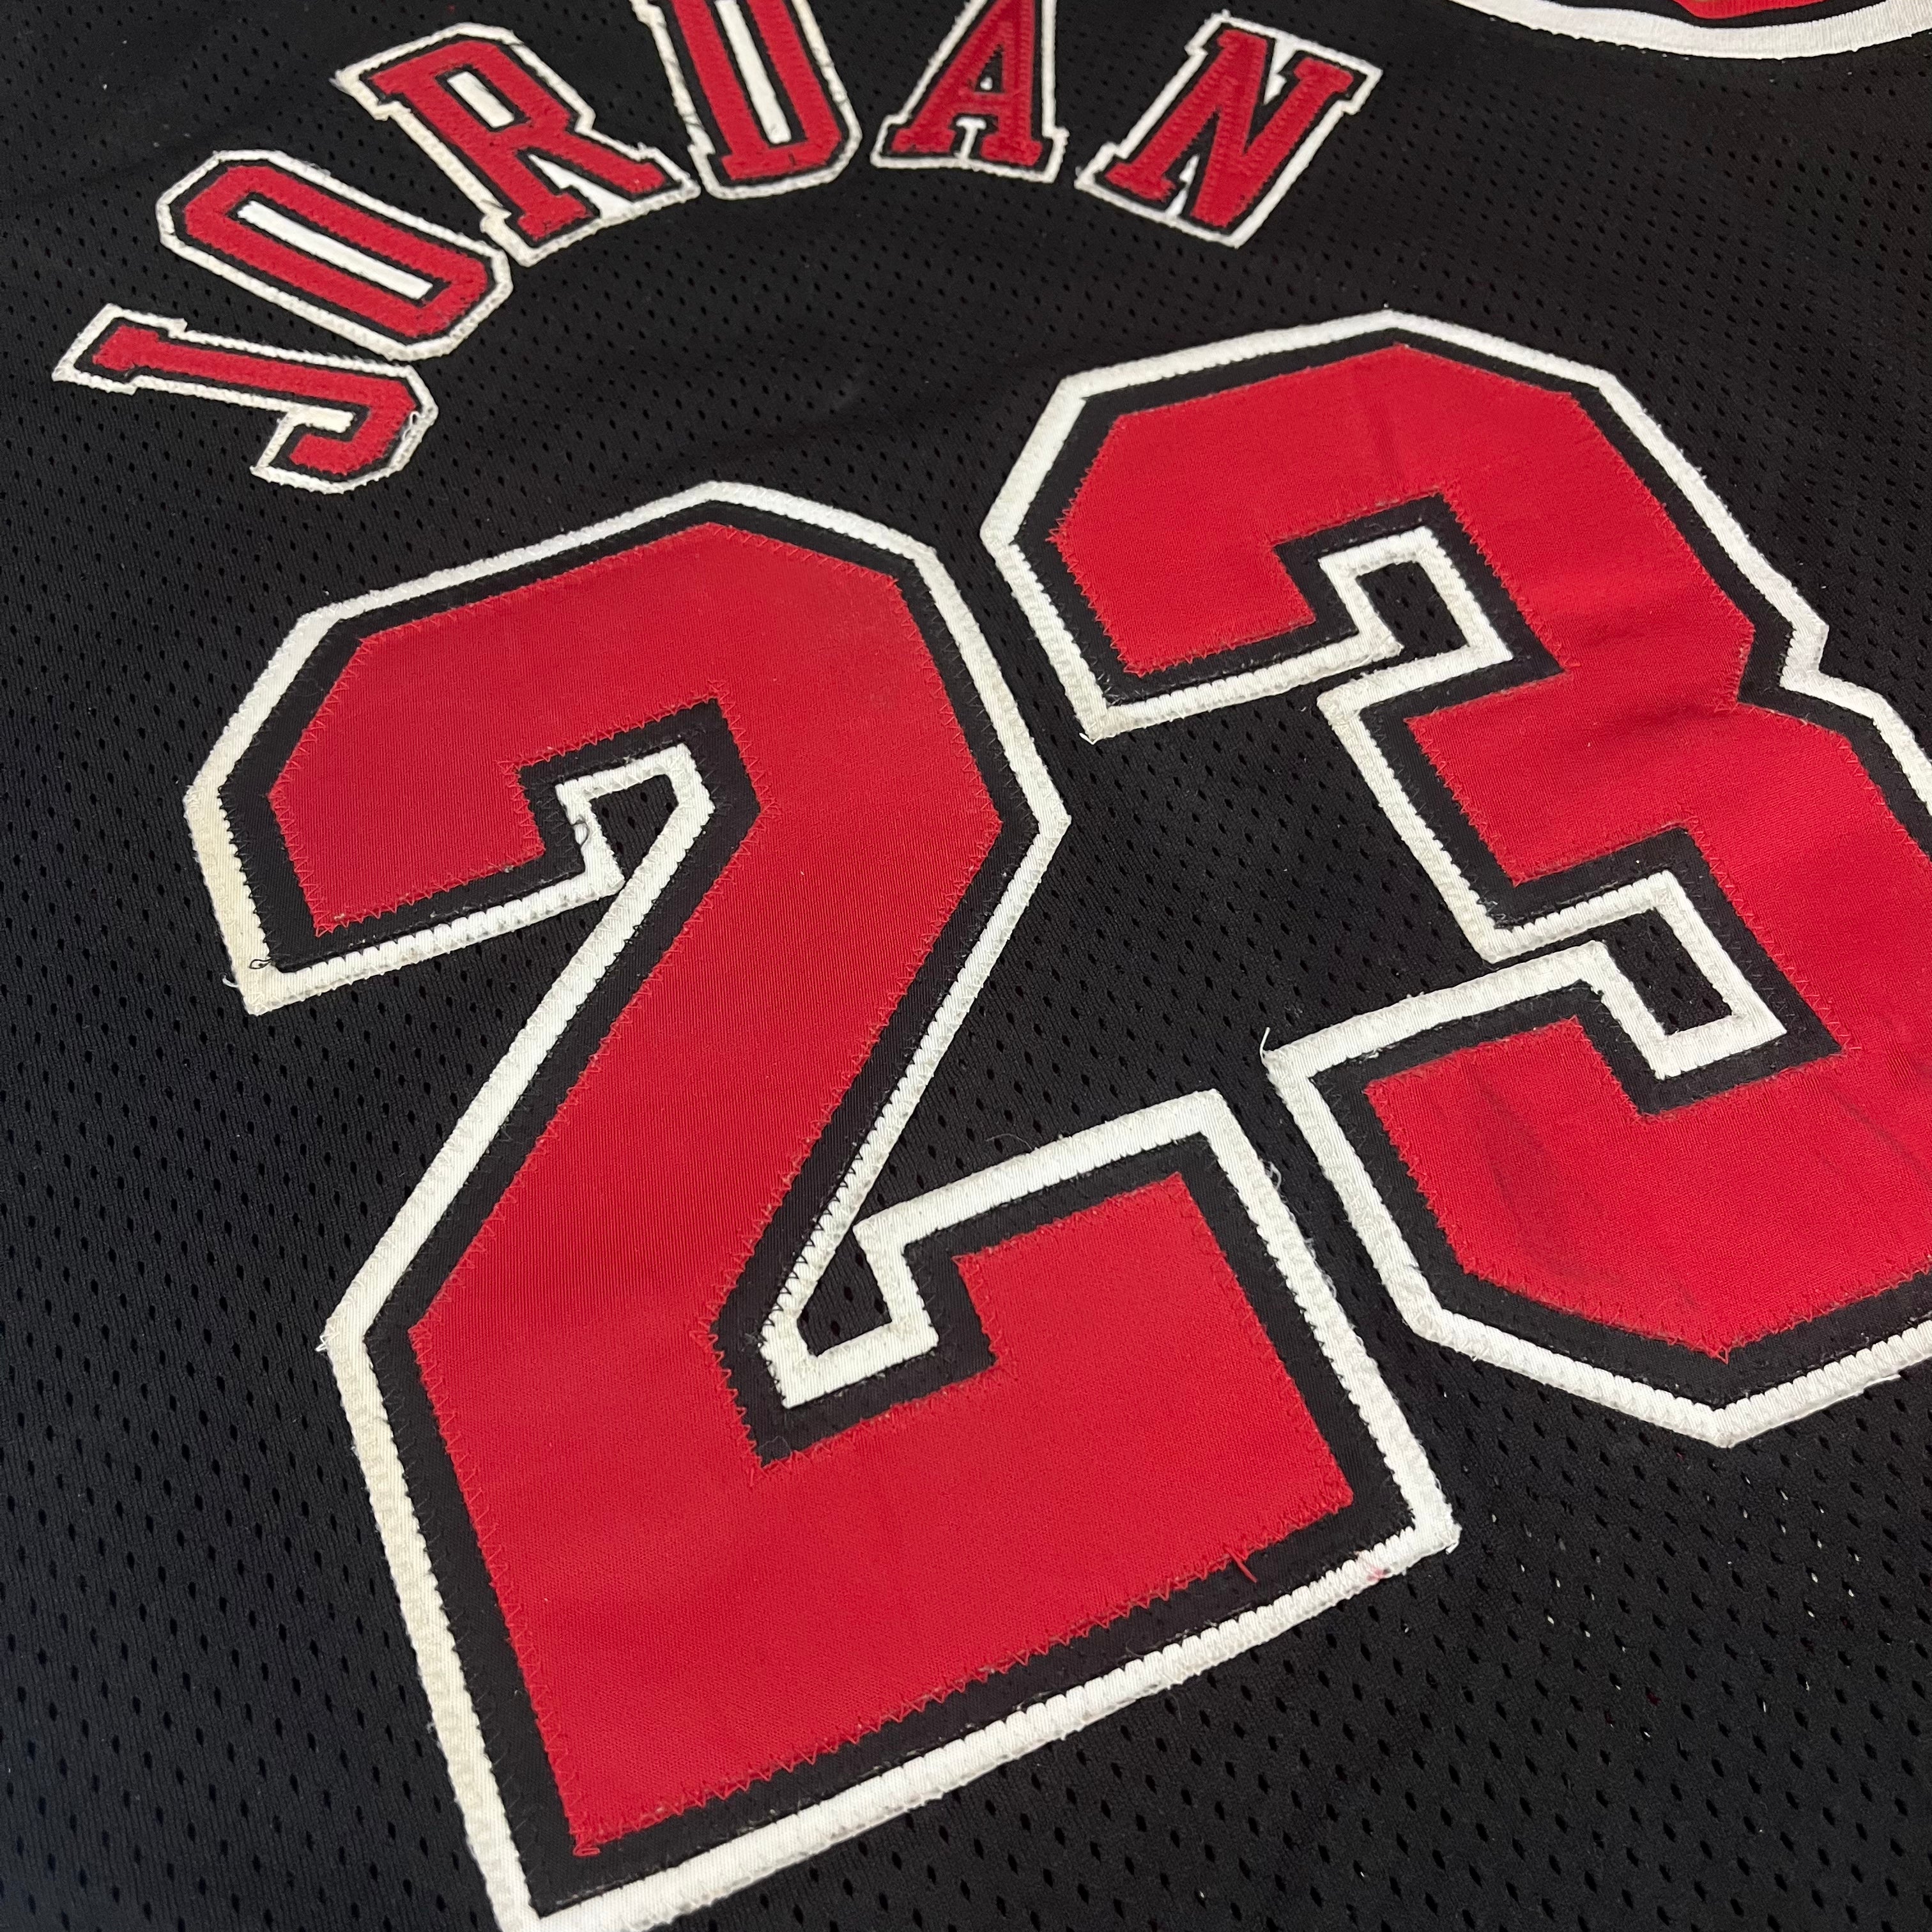 On This Day in 1994: Chicago Bulls retire Michael Jordan's number 23 -  Sportstar